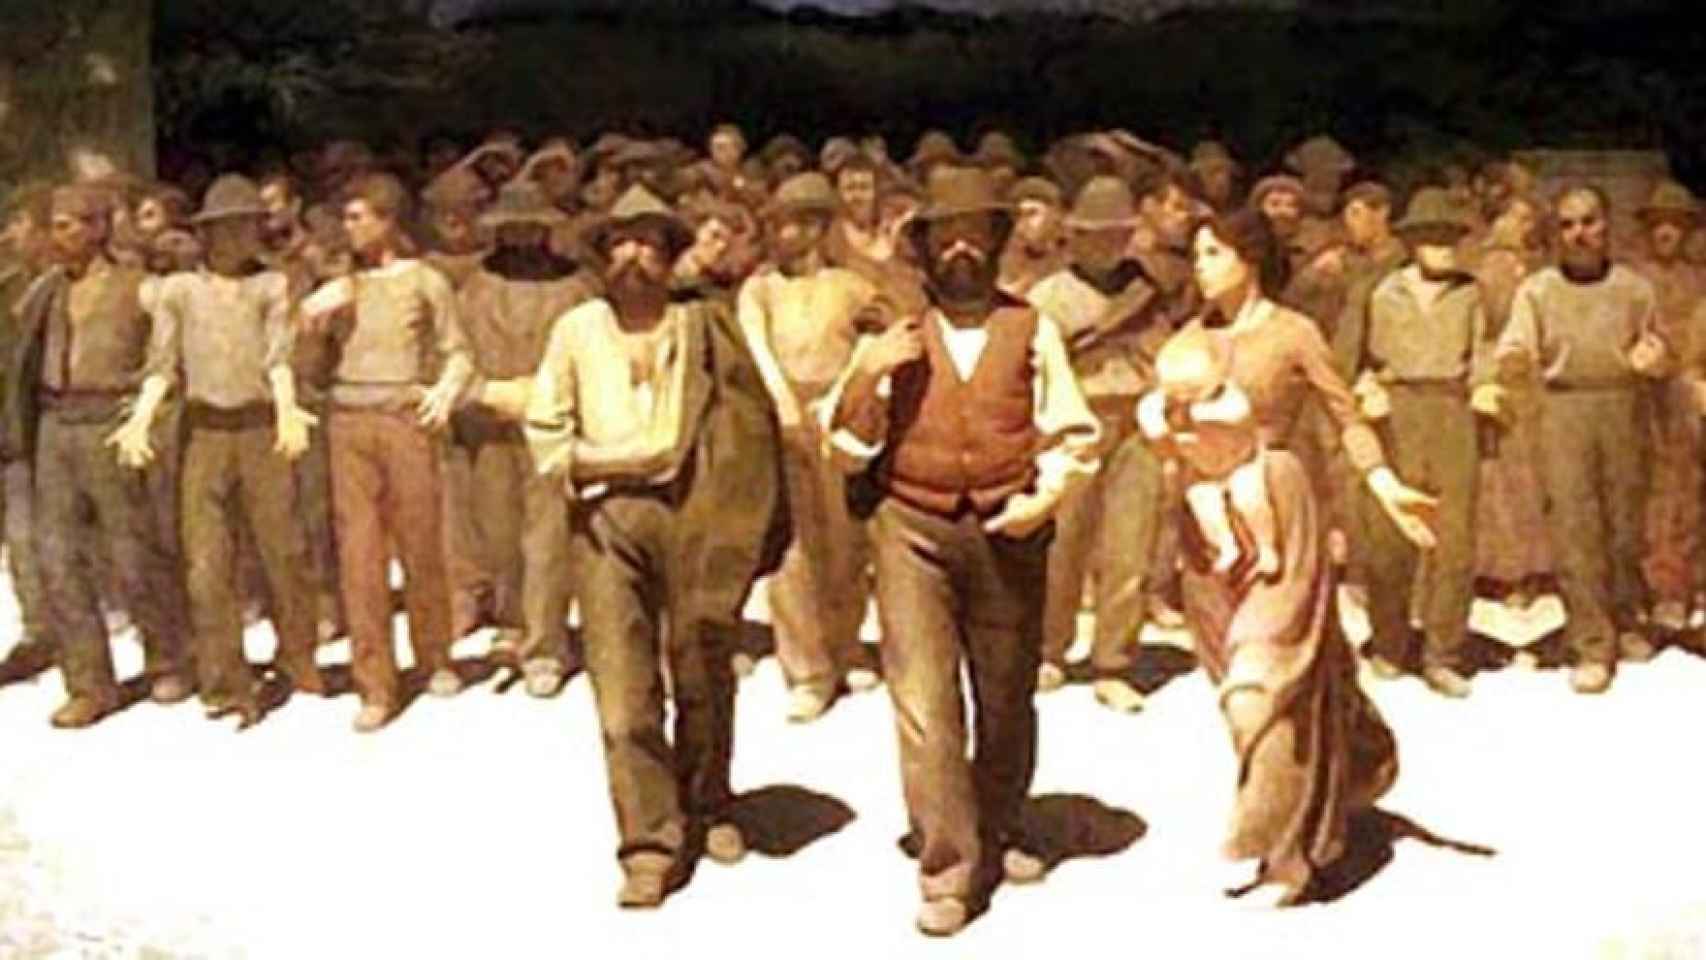 Los campesinos de Novecento, de Bernardo Bertolucci